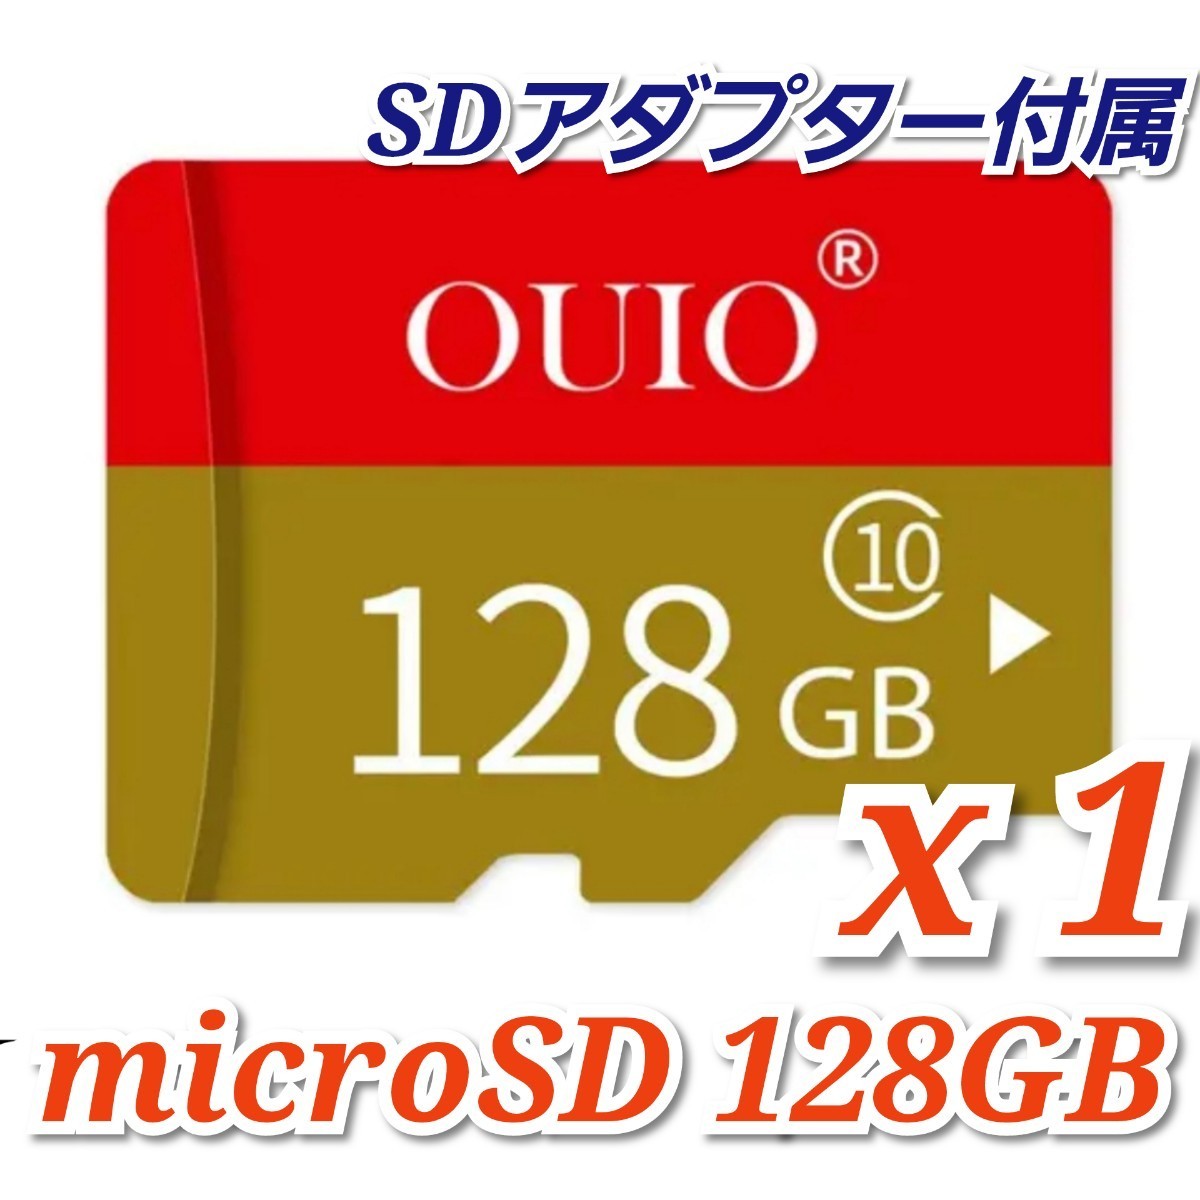 【送料無料】マイクロSDカード 128GB 1枚 class10 1個 microSD microSDXC マイクロSD OUIO 128GB RED-GOLD_画像2